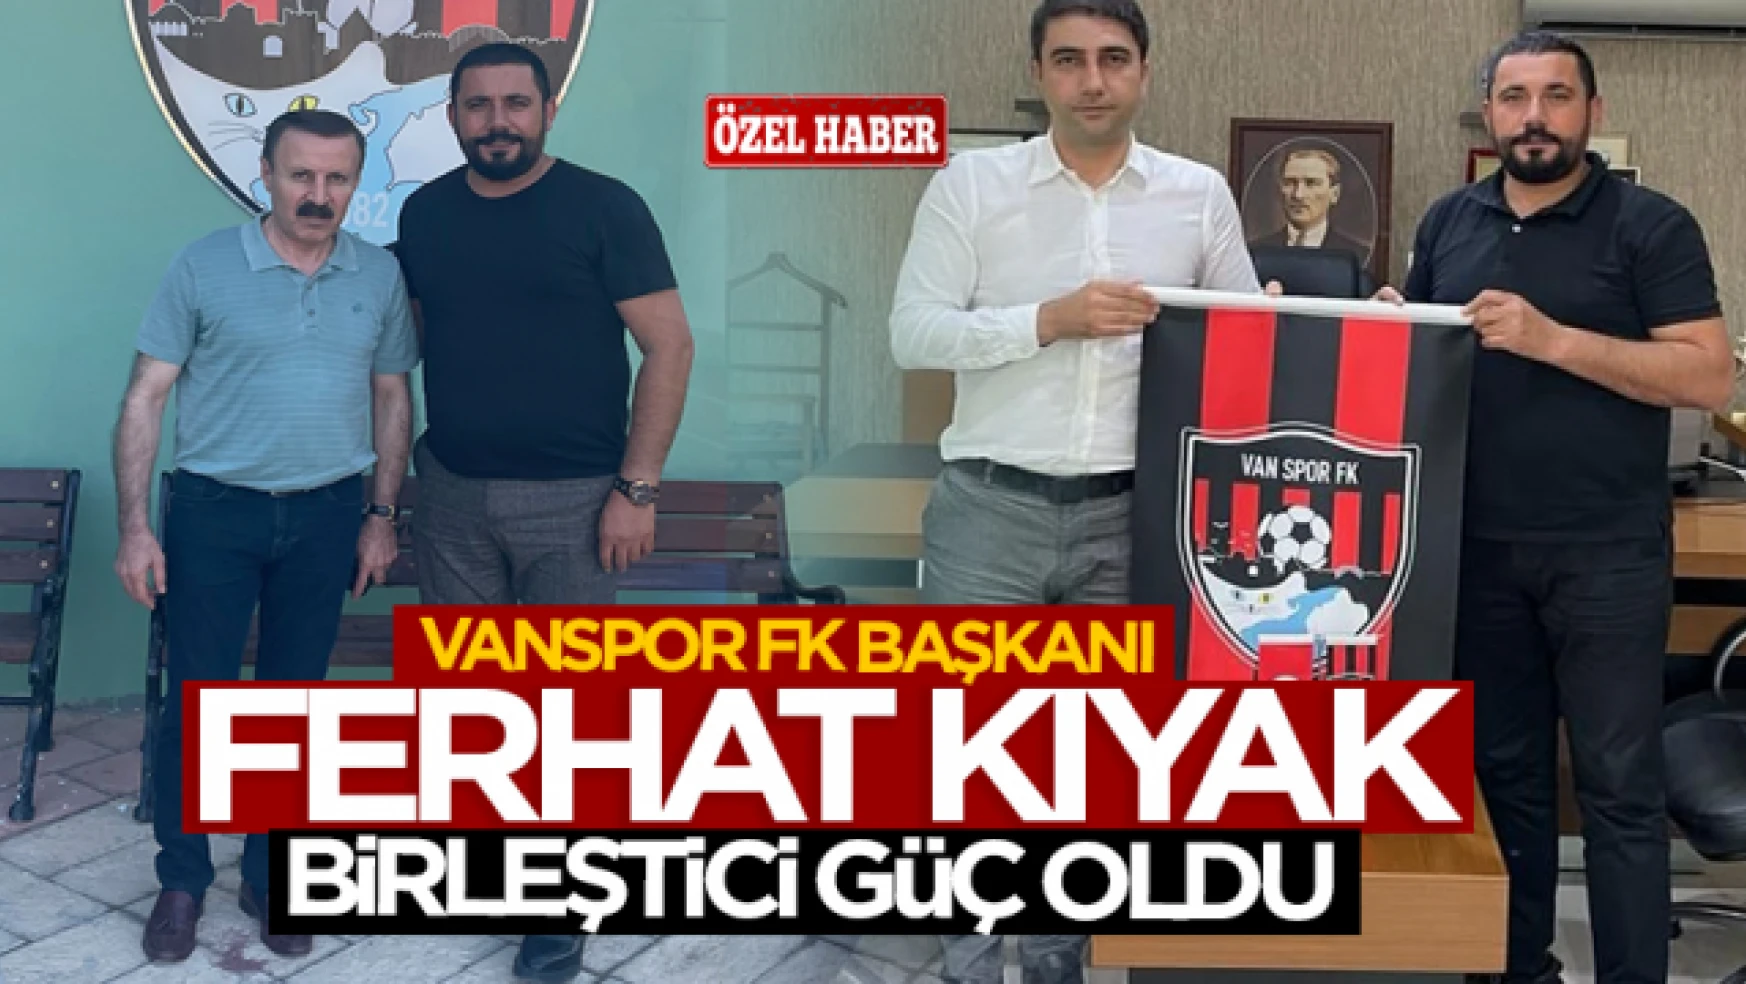 Vanspor FK Başkanı Ferhat Kıyak birleştirici güç oldu